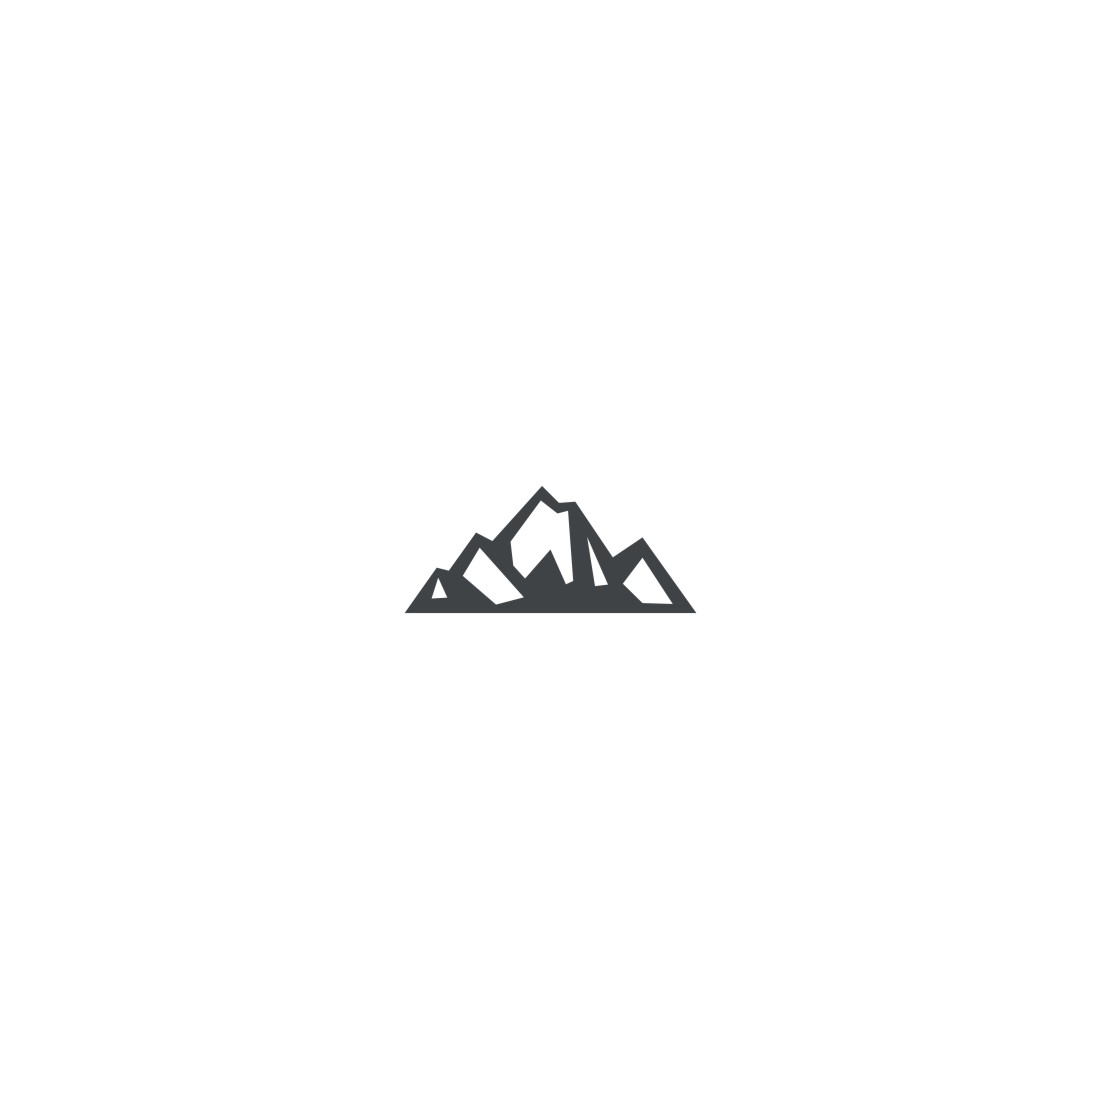 Mountain Logo Set Fourth Example.